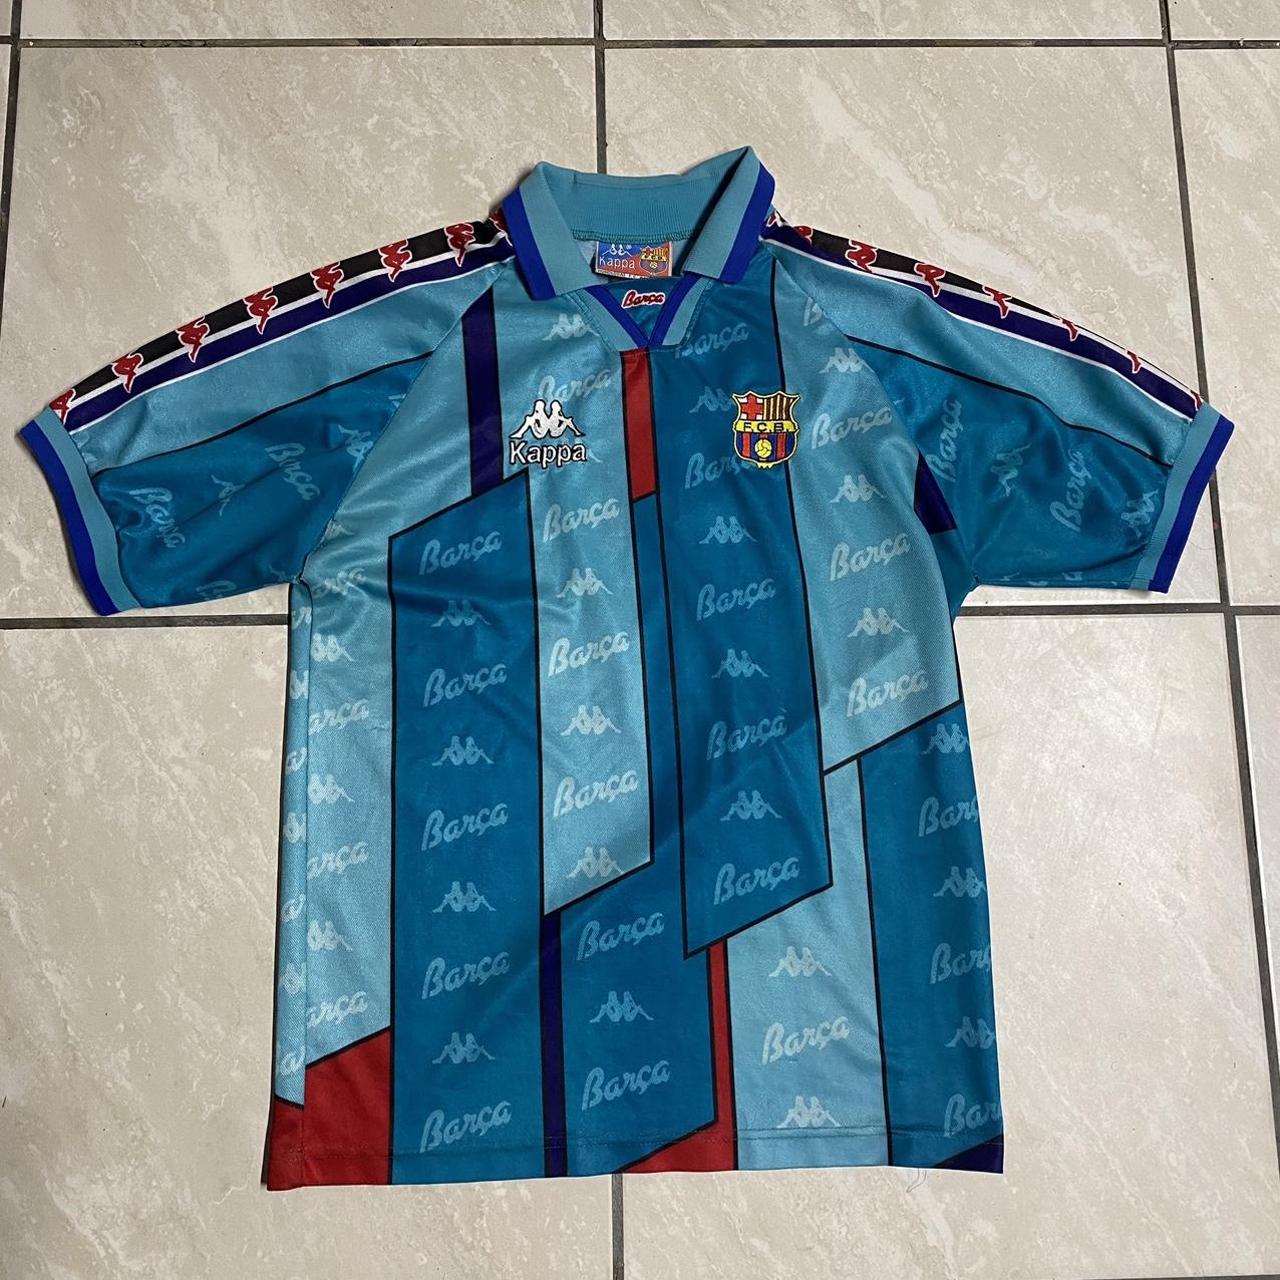 Vintage 1997 Barcelona futbol soccer kit Cool it’s... - Depop